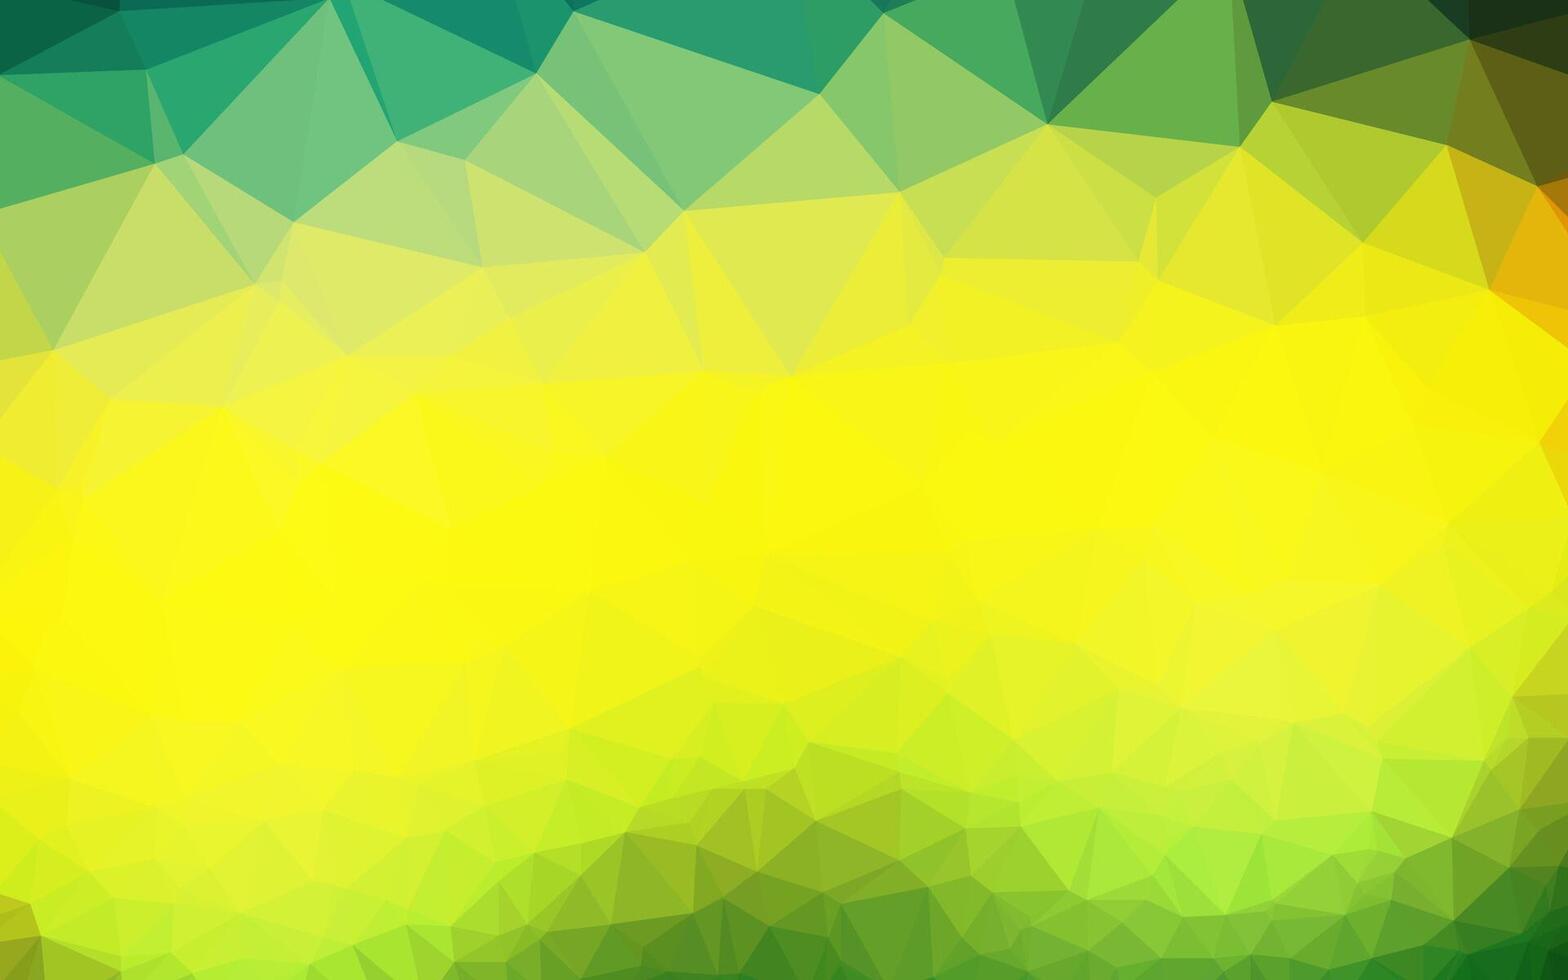 sfondo astratto mosaico vettoriale verde scuro, giallo.